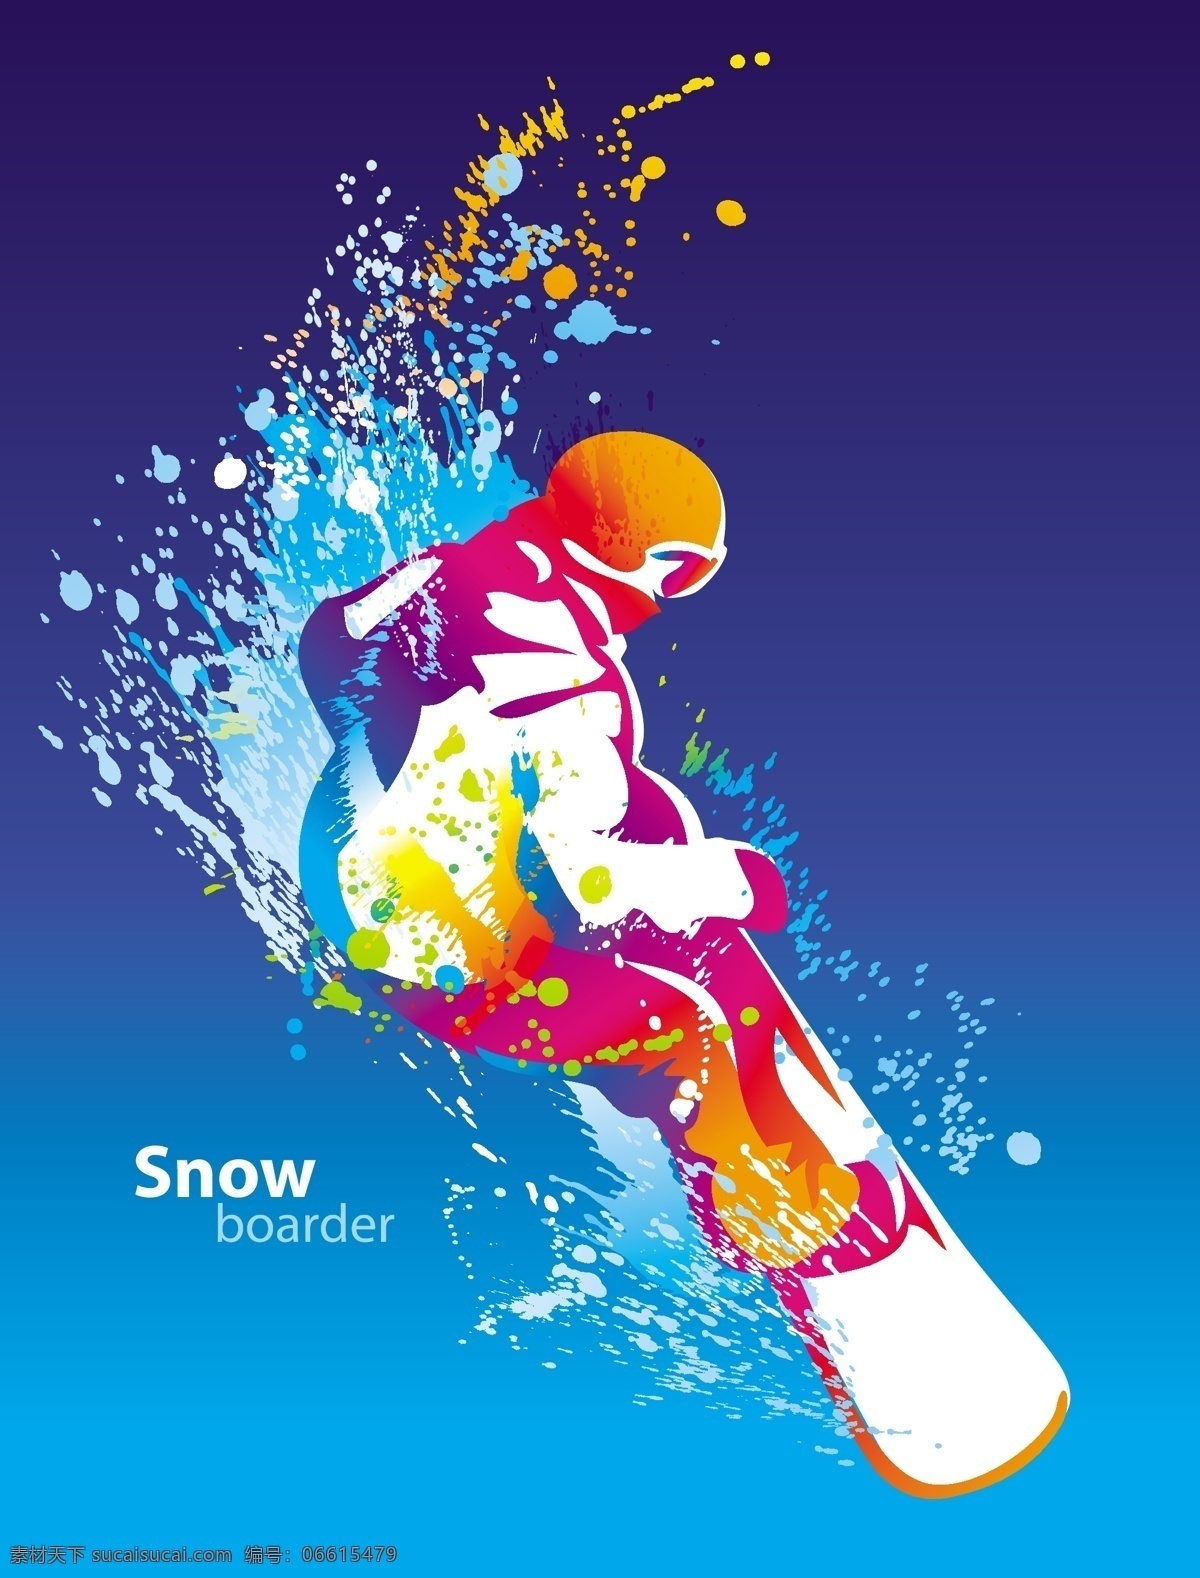 矢量滑雪 卡通滑雪 滑雪插画 手绘滑雪 滑雪剪影 滑雪运动员 体育运动 滑雪运动 滑雪人物 炫彩人物 人物卡通 人物图库 男性男人